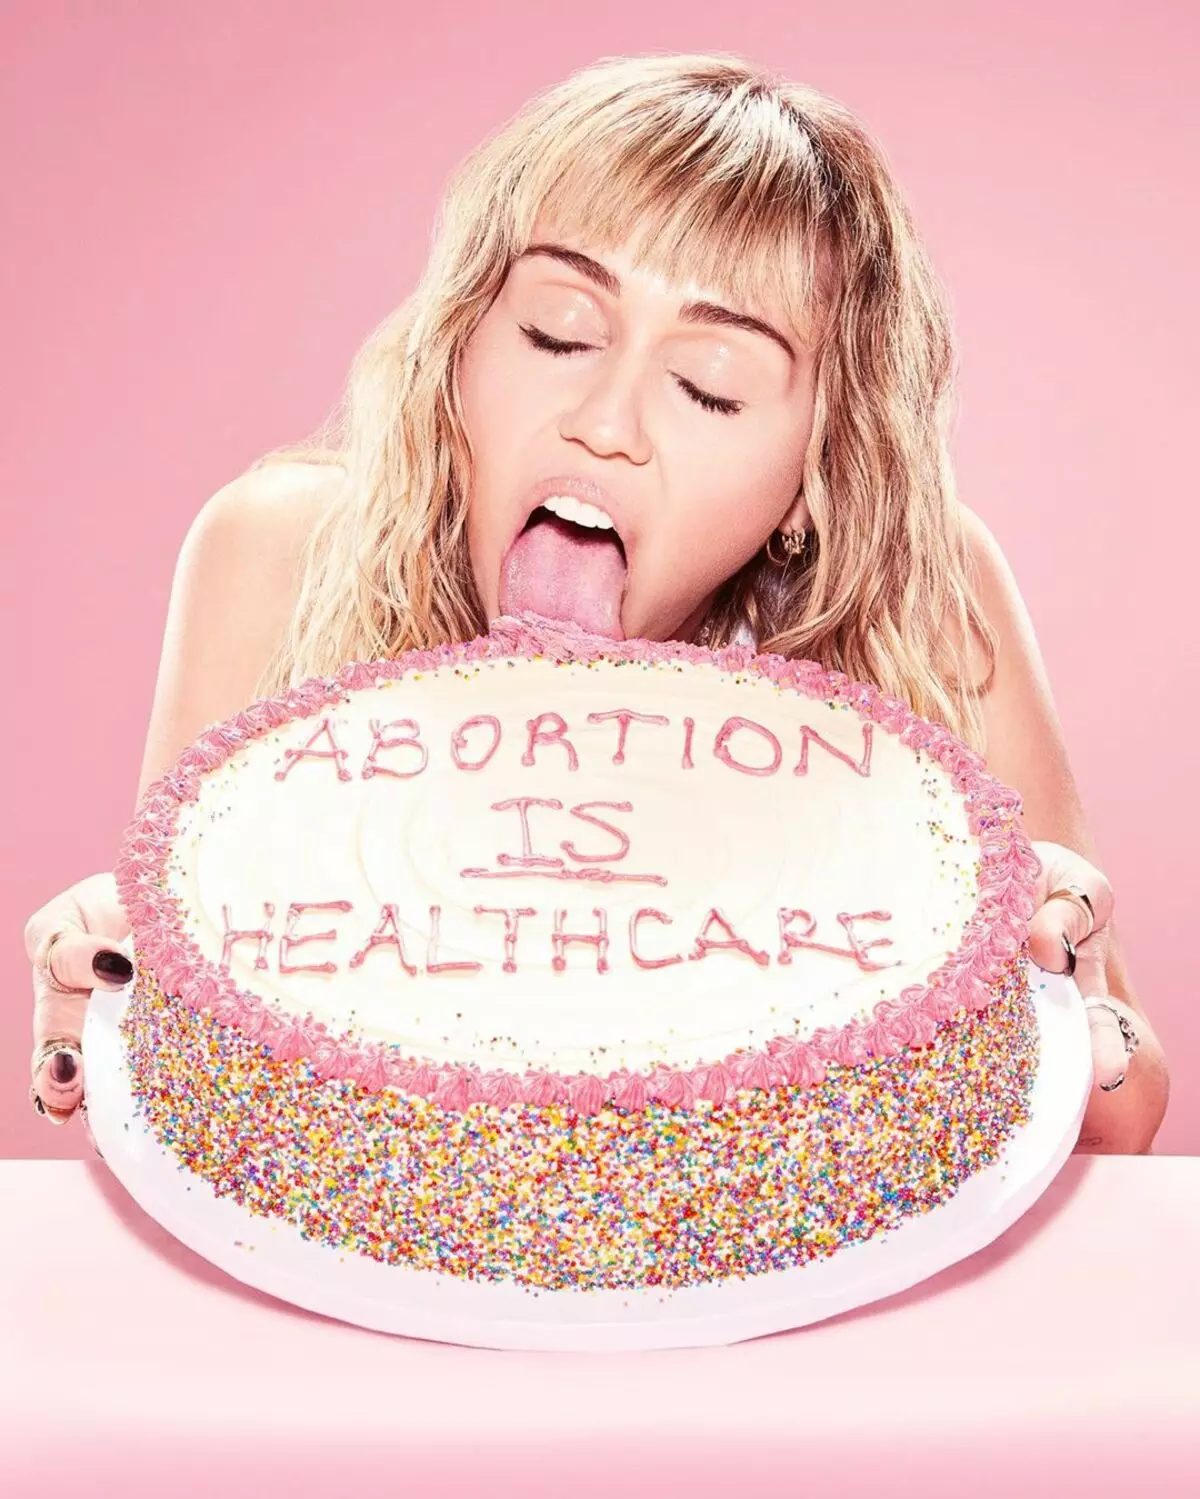 Miley Cyrus apologized for bildet med en kake til støtte for abort 61711_1